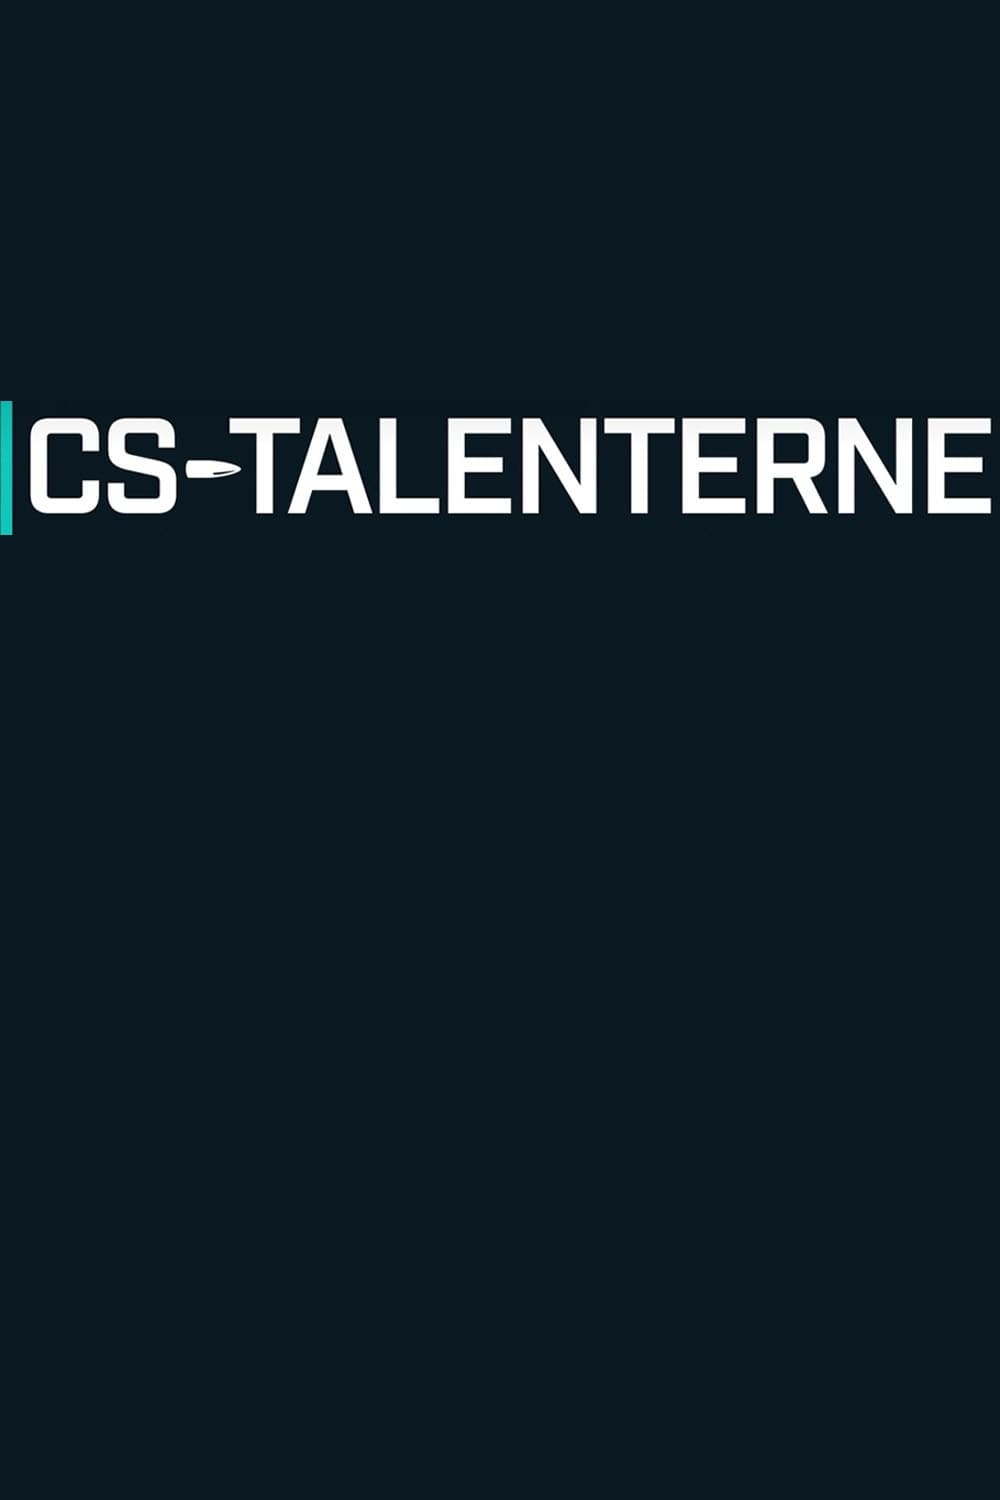 CS-Talenterne